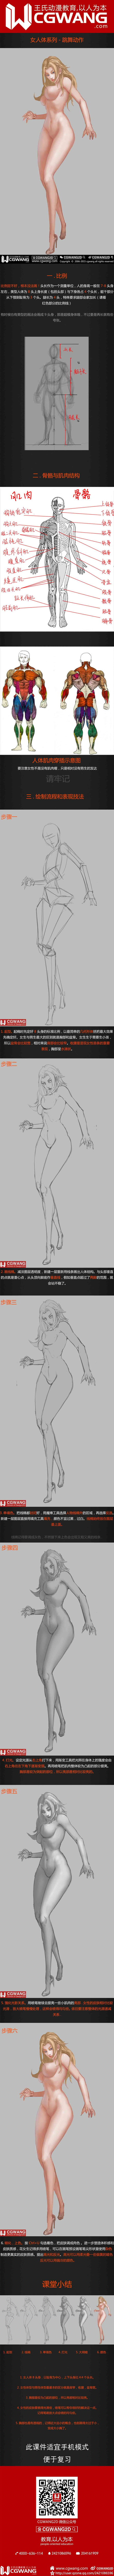 原画、插画、漫画、人体、跳舞动作、CGWANG王氏教育集团、旺旺哒教程系列